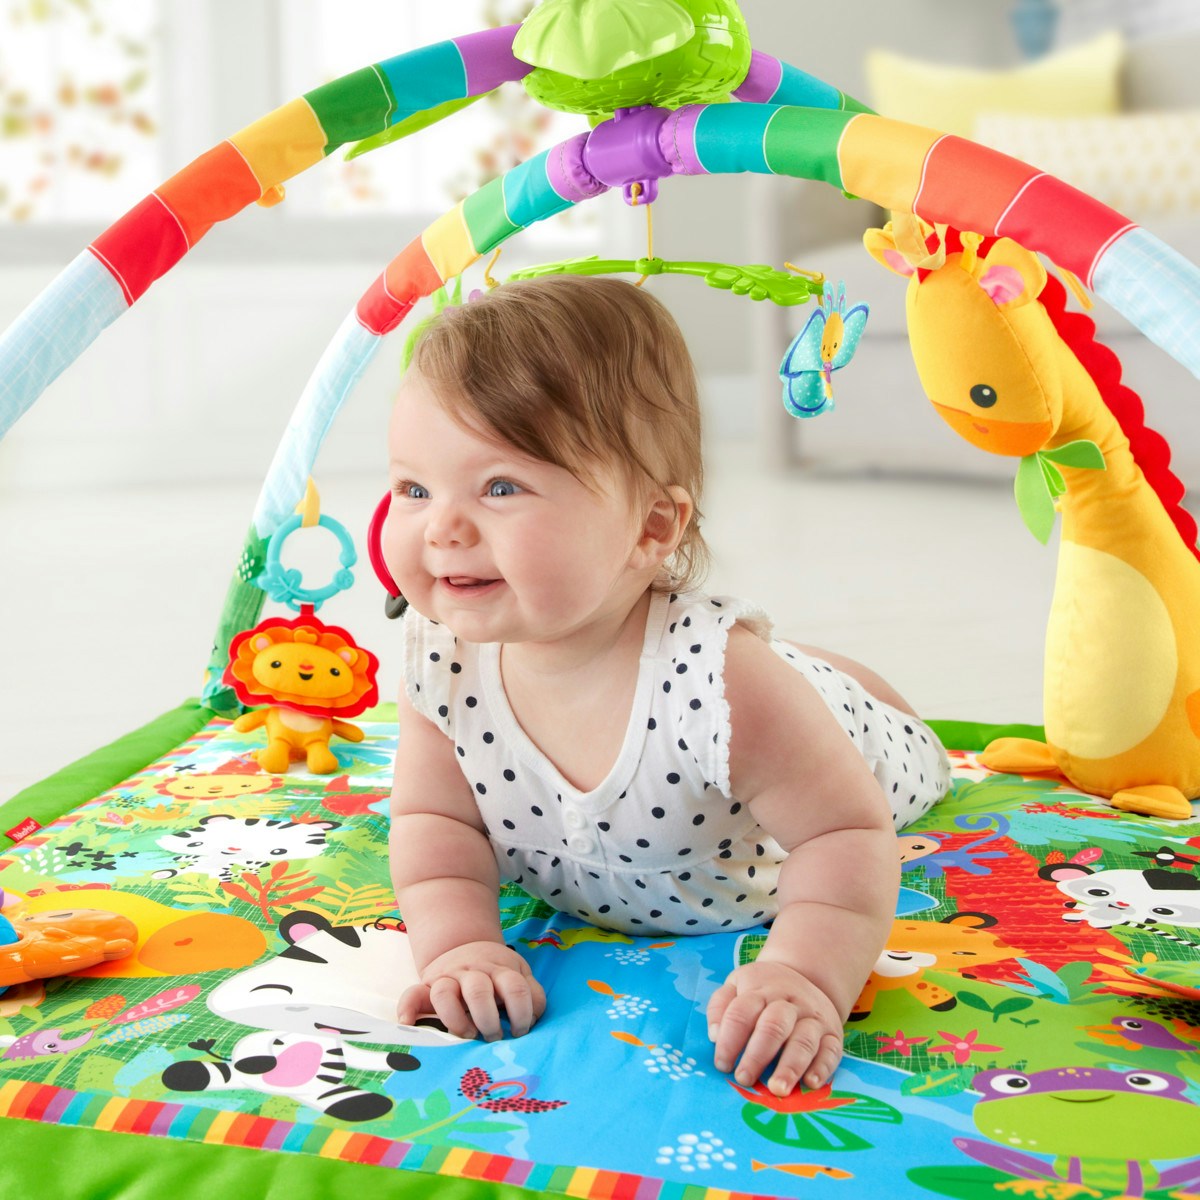 遊ぶなかで自然と赤ちゃんの五感を刺激 日中の過ごし方や寝かしつけも玩具がママをサポート ママリ